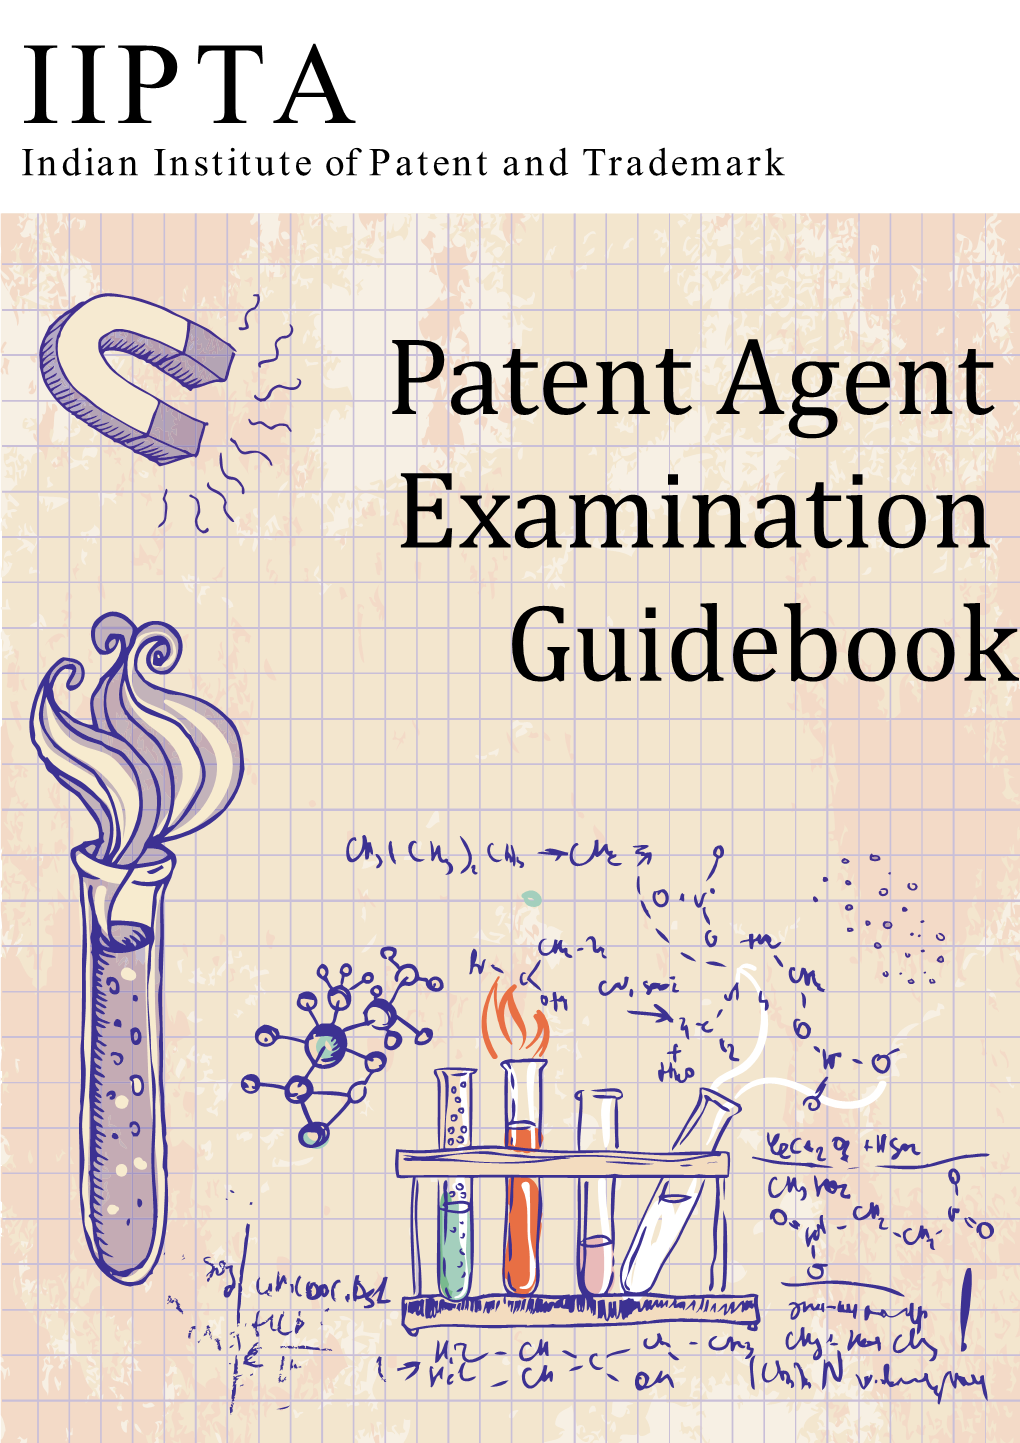 Patent Agent Examination Guidebook